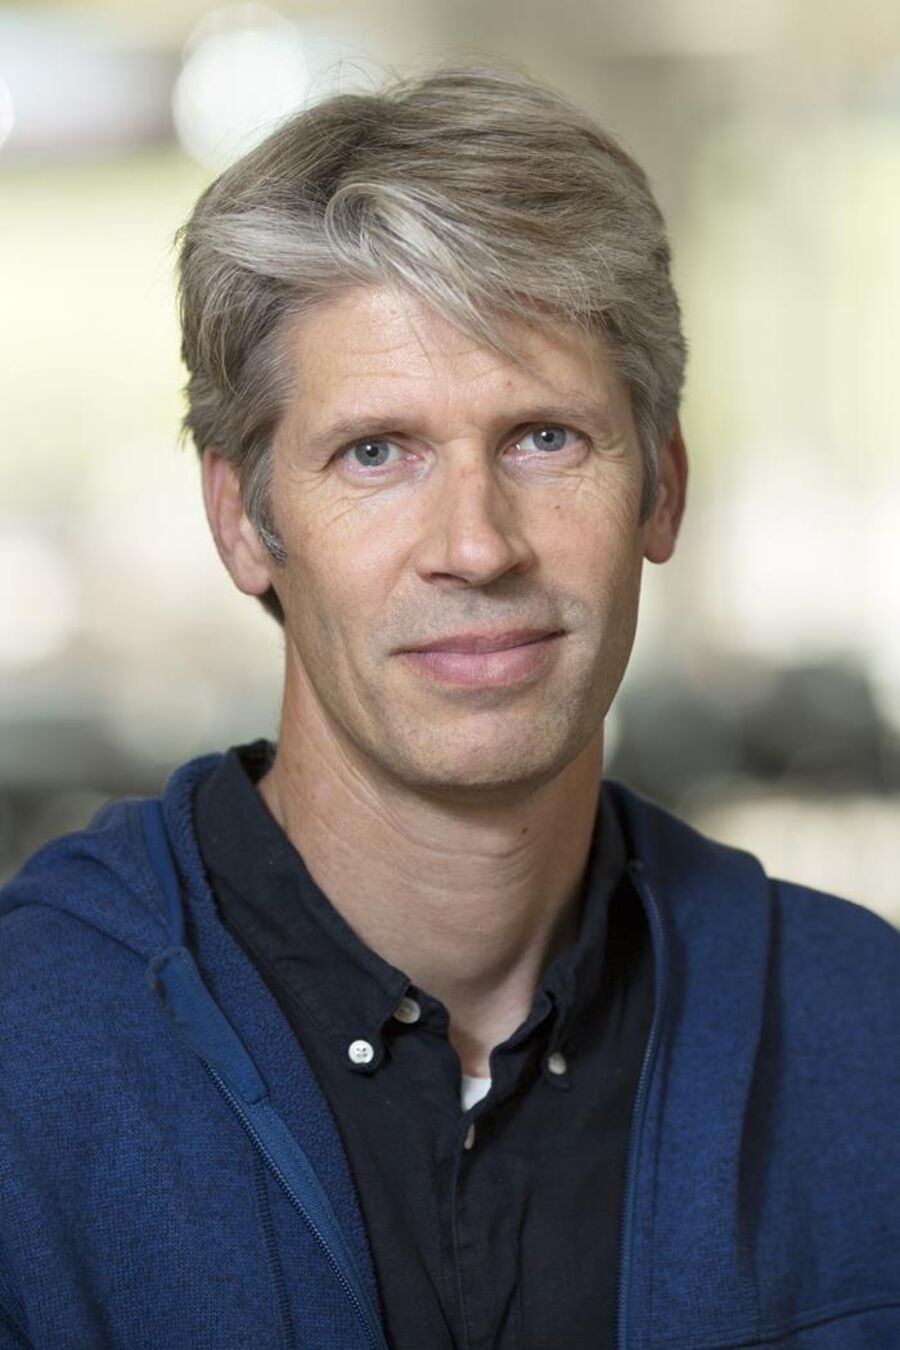 Professor Jacob Giehm Mikkelsen